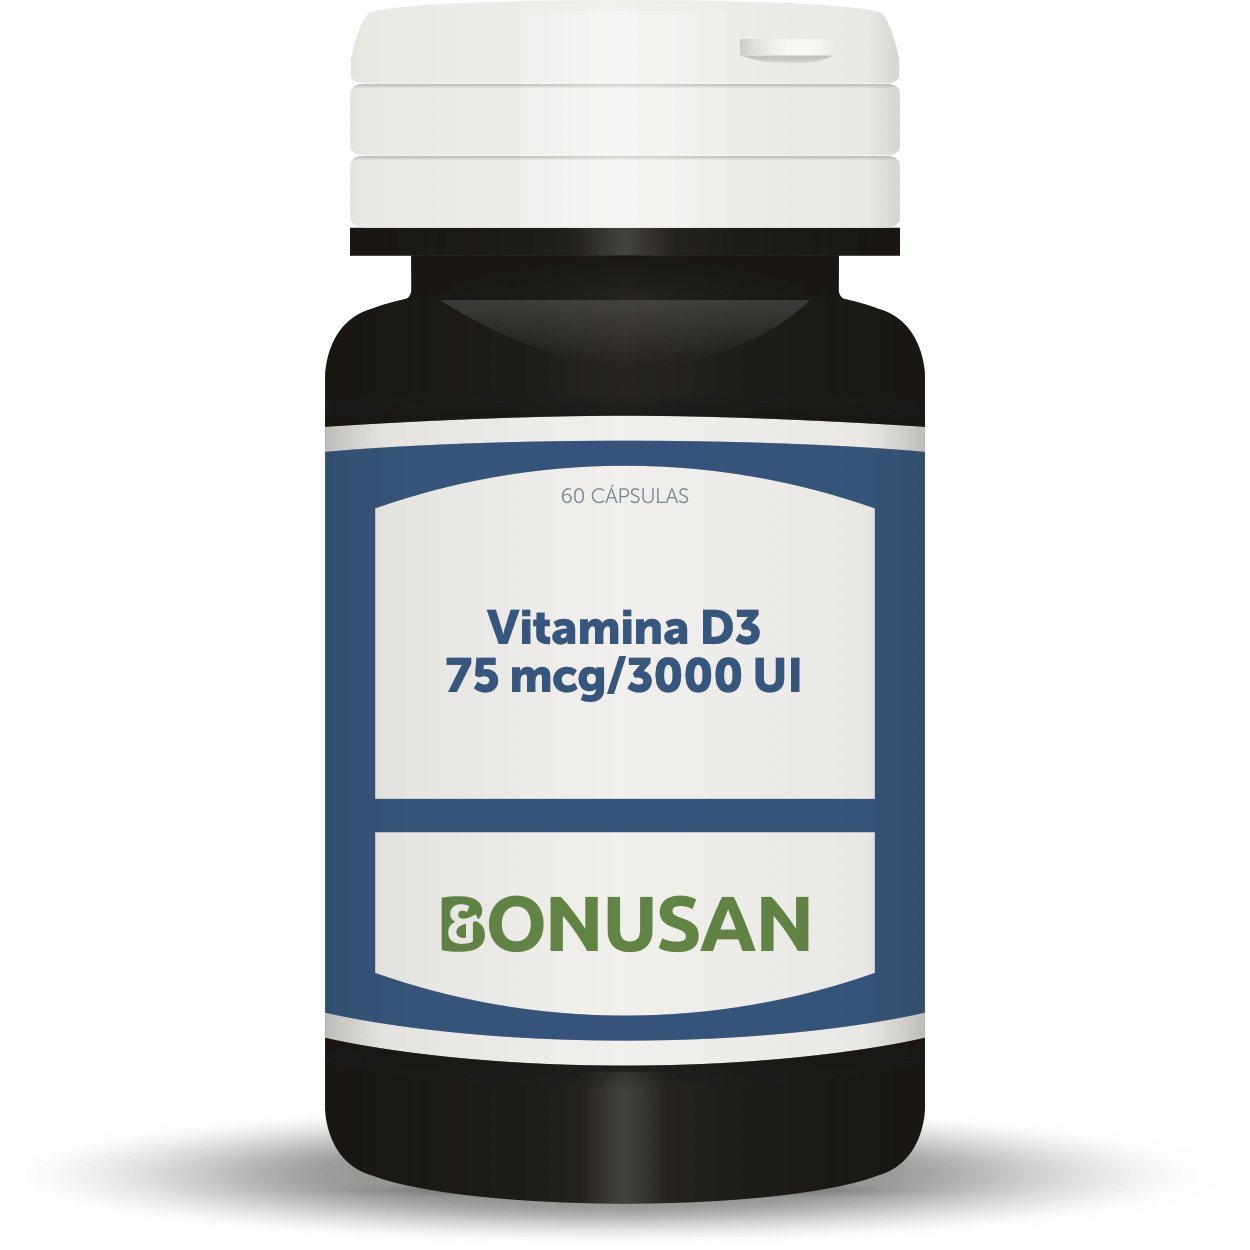 Vitamina D3 75 mcg 3000 UI 60 Capsulas | Bonusan - Dietetica Ferrer